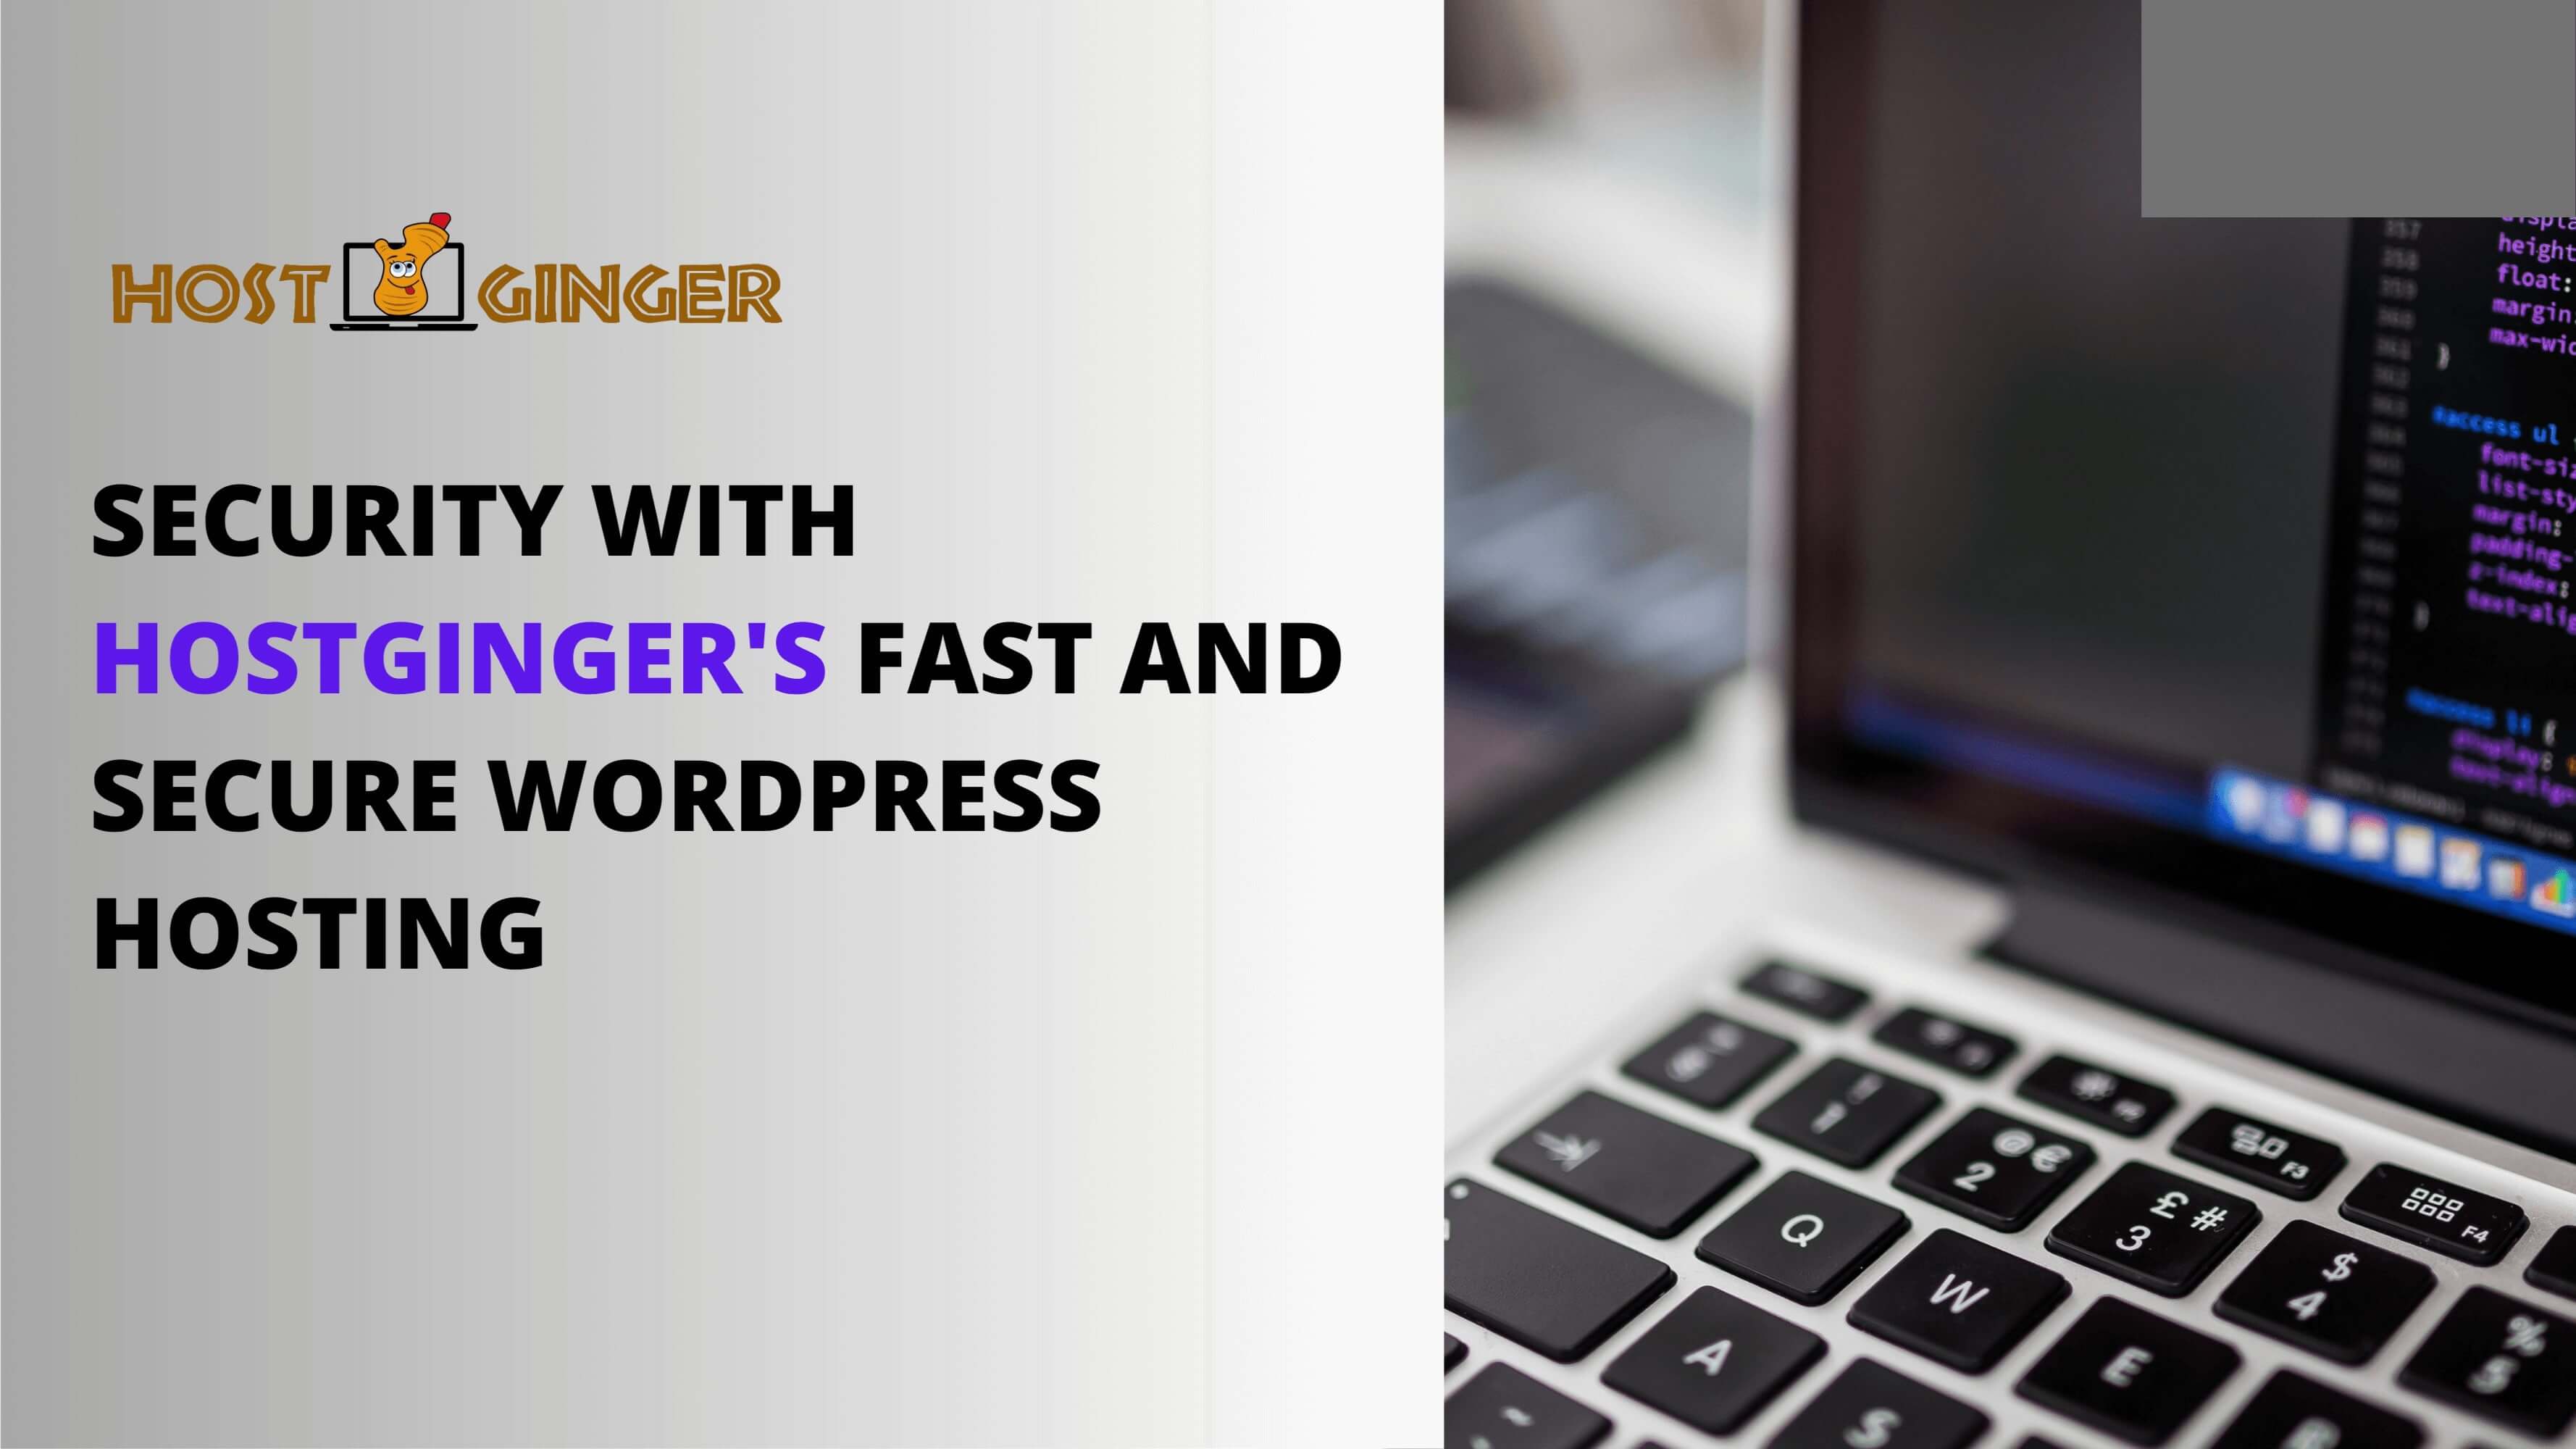 Hostginger's Fast and Secure WordPress Hosting